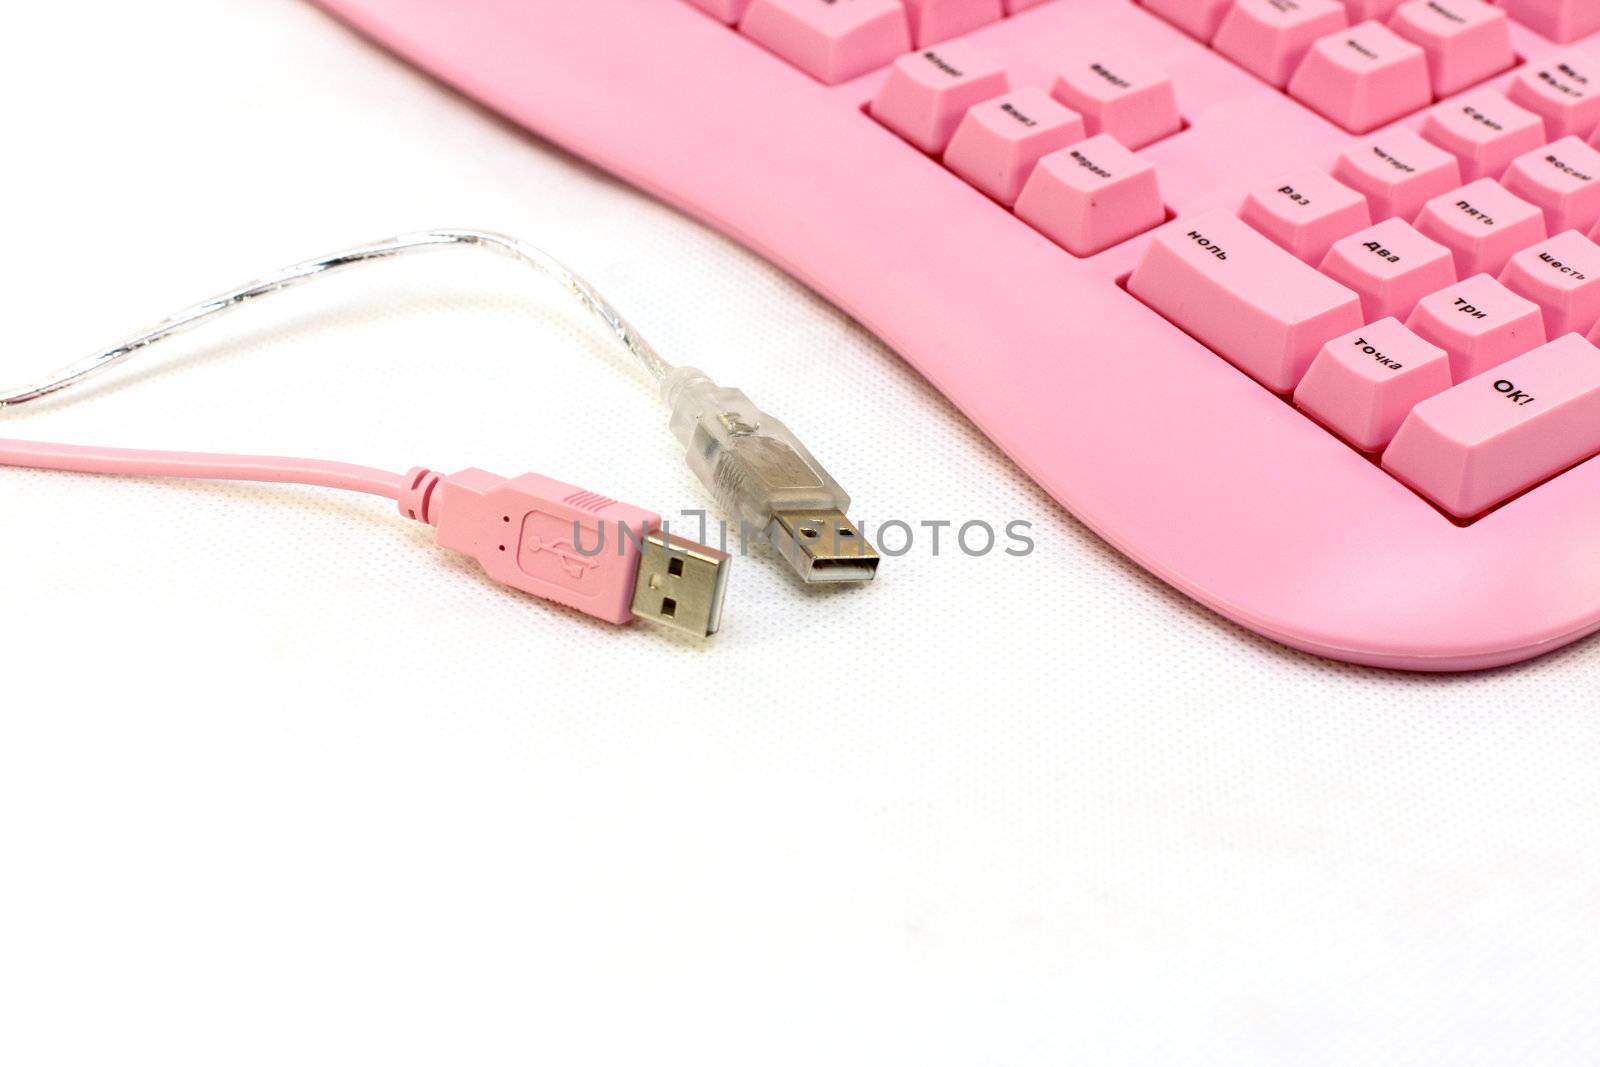 keyboard USB by fedlog